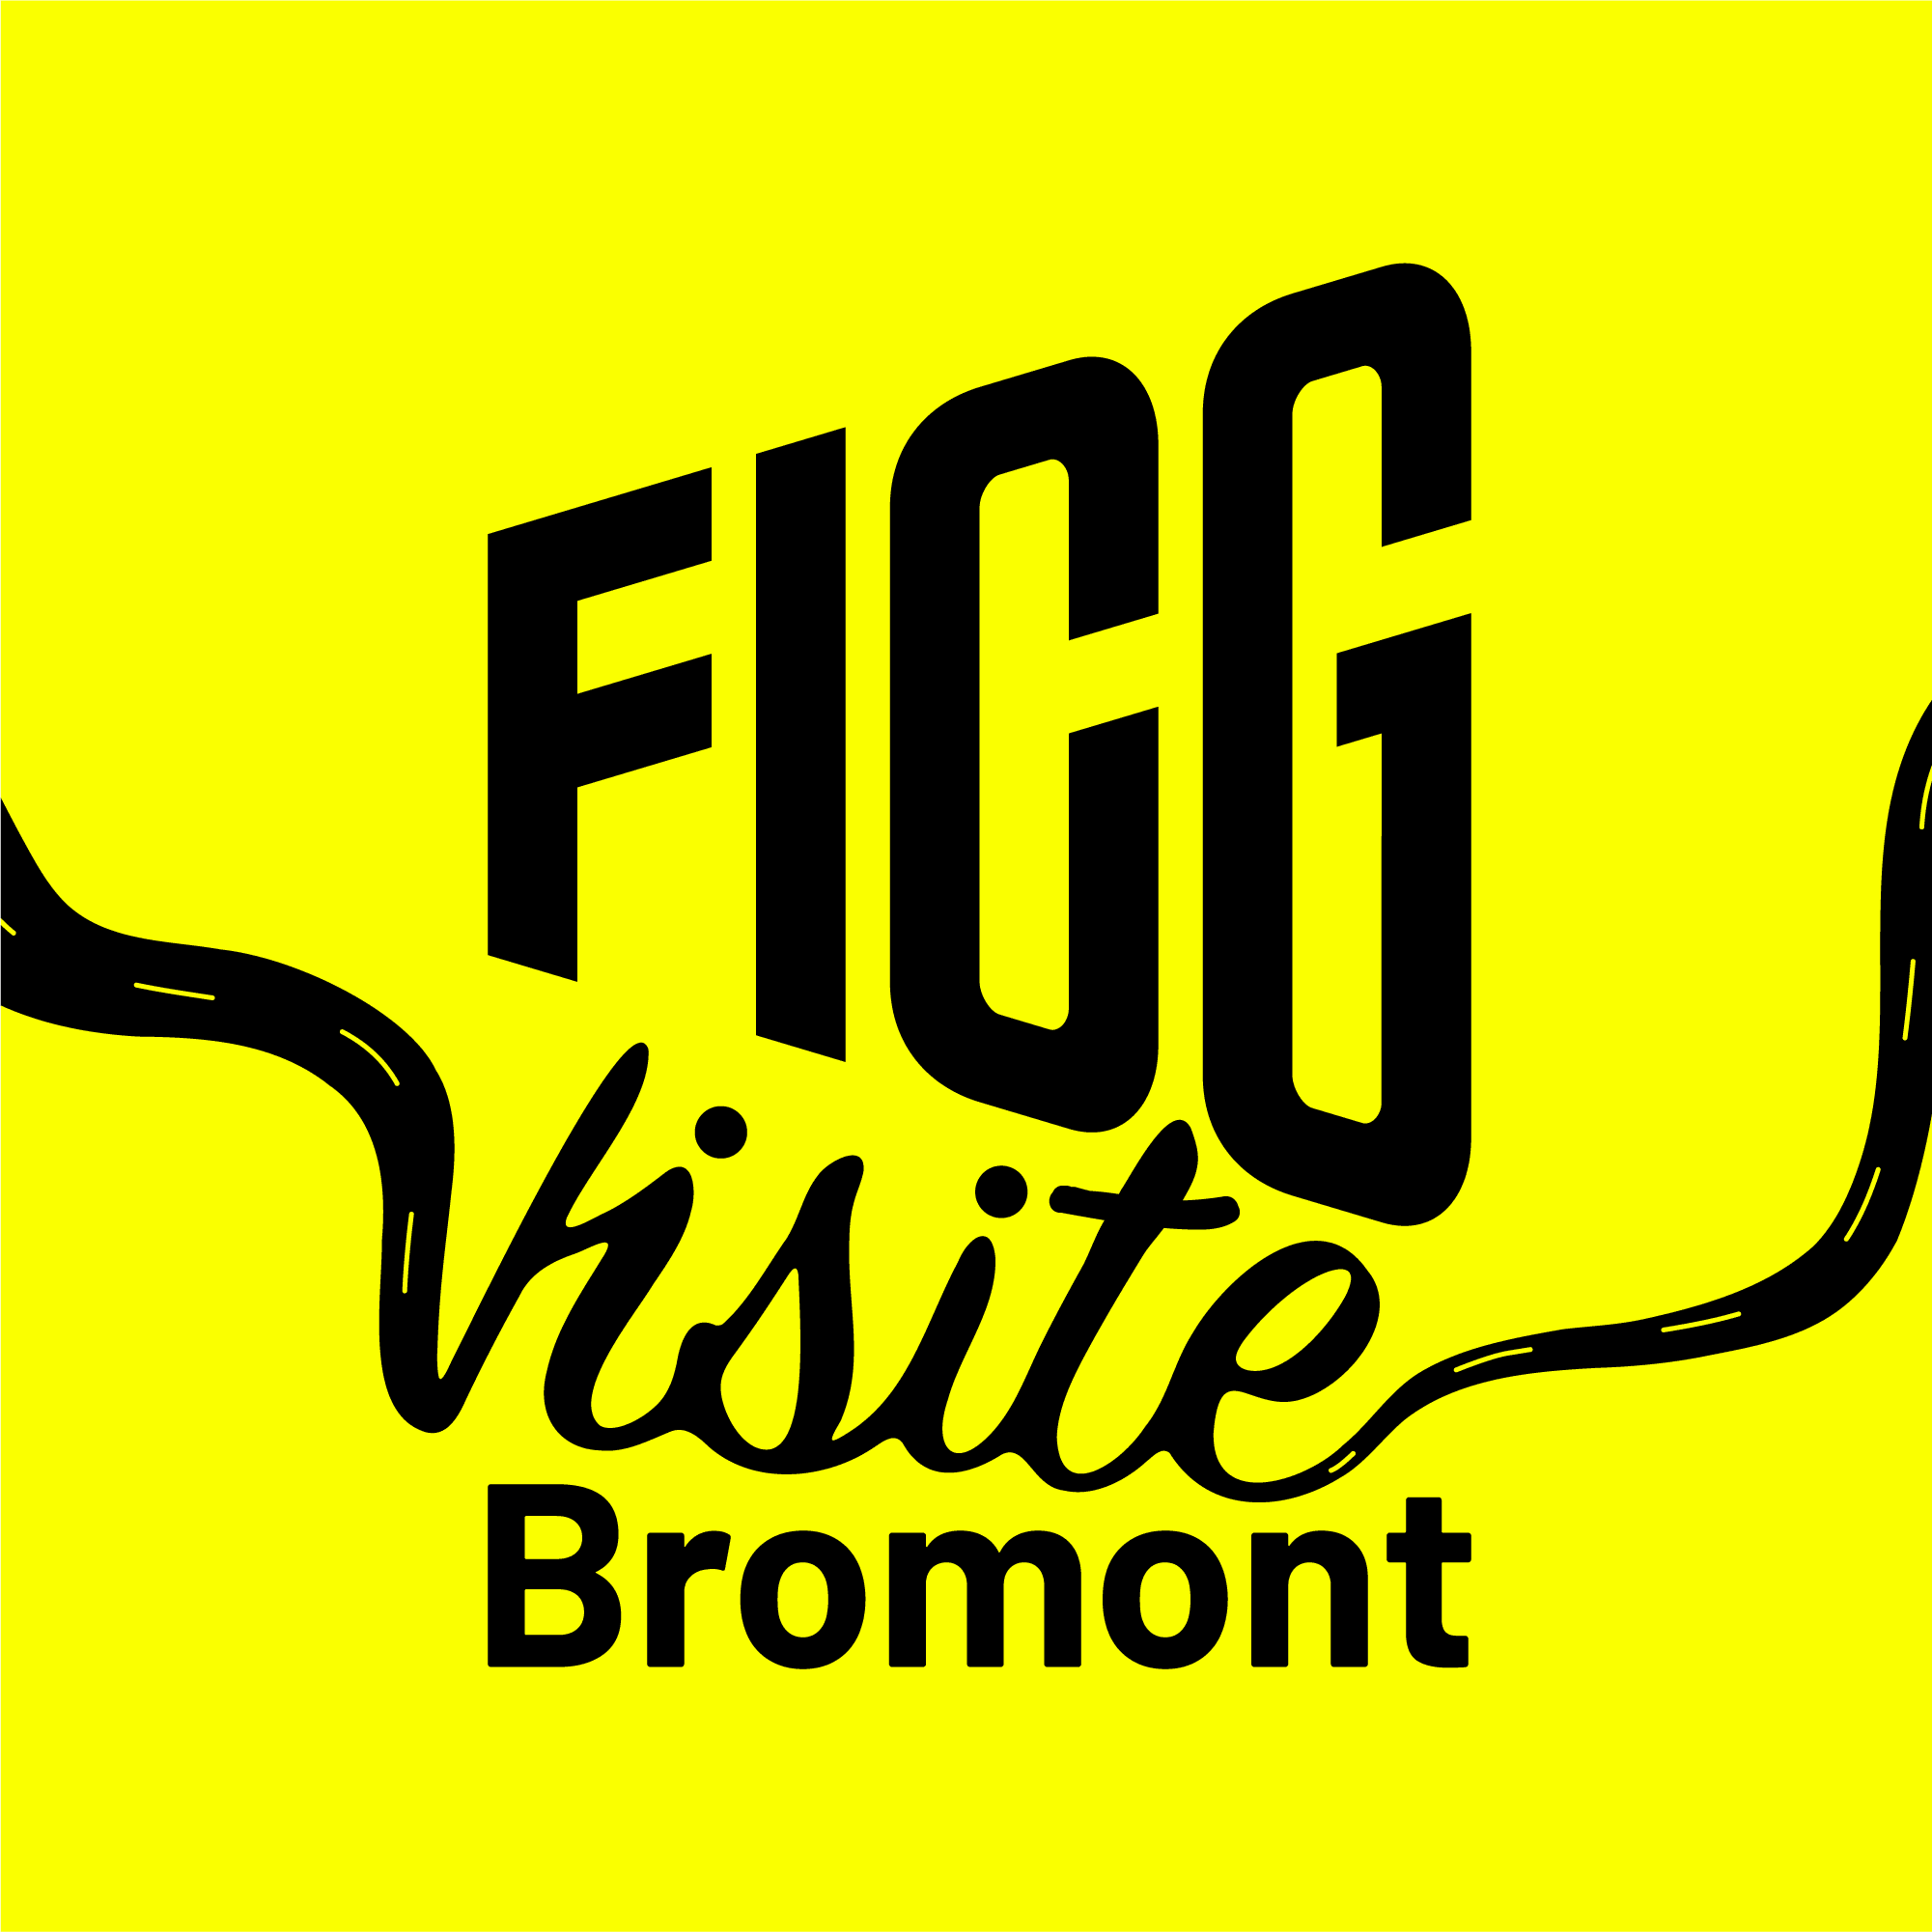 Une image jaune vif avec le texte « FICG Visite Bromont » en lettres noires grasses. Le mot « visite » est stylisé par une ligne ondulée s’étendant de chaque côté.